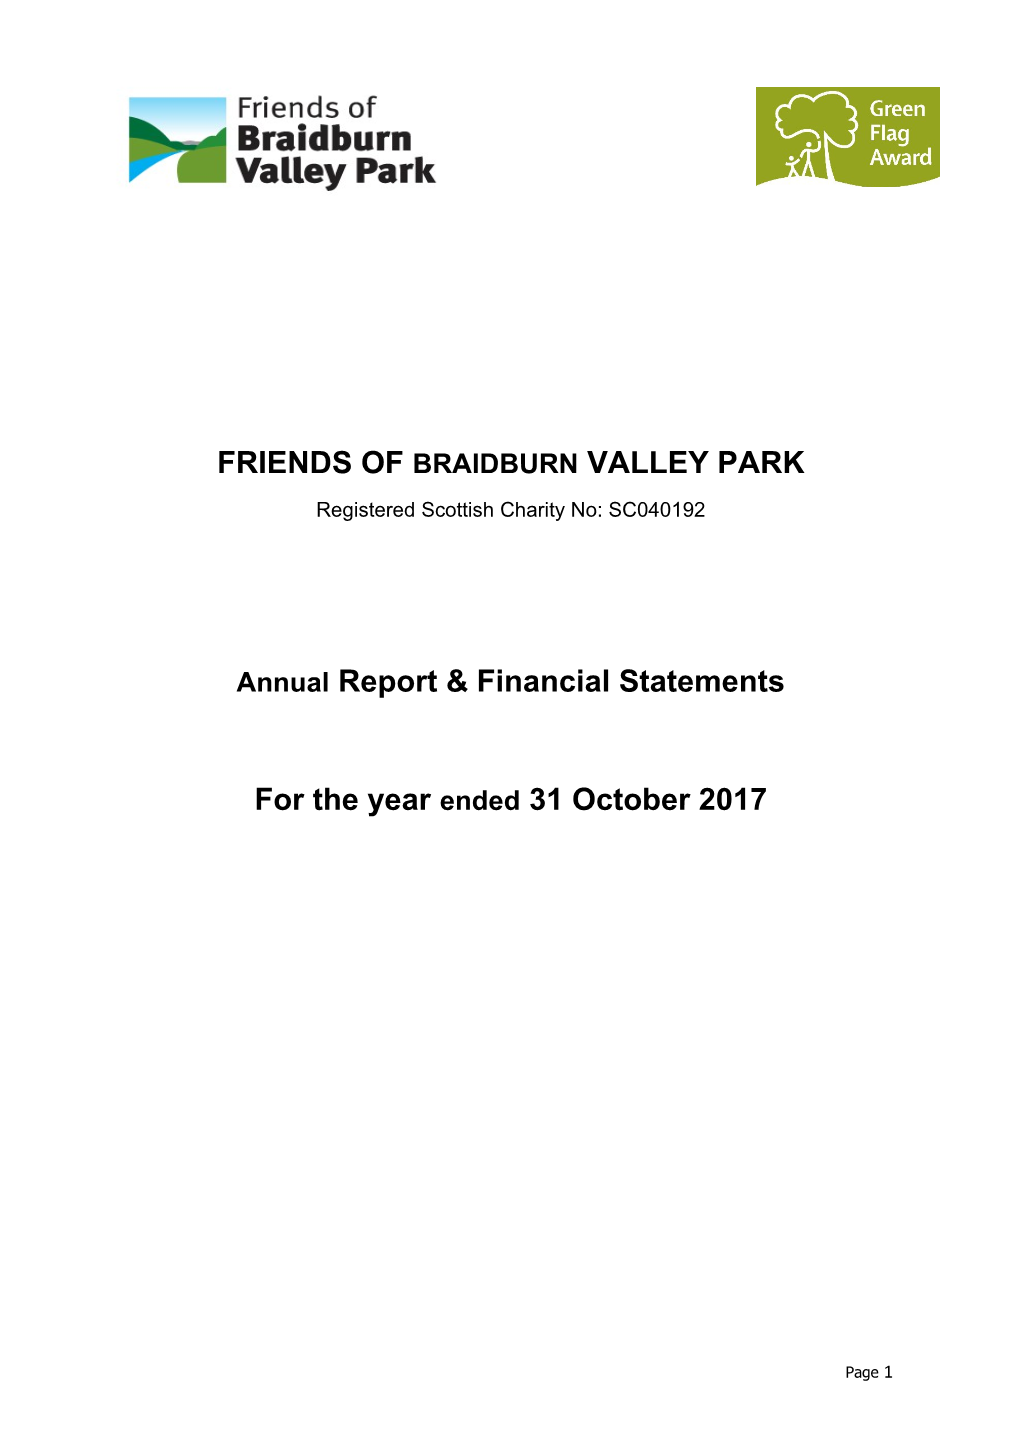 Friends of Braidburn Valley Park